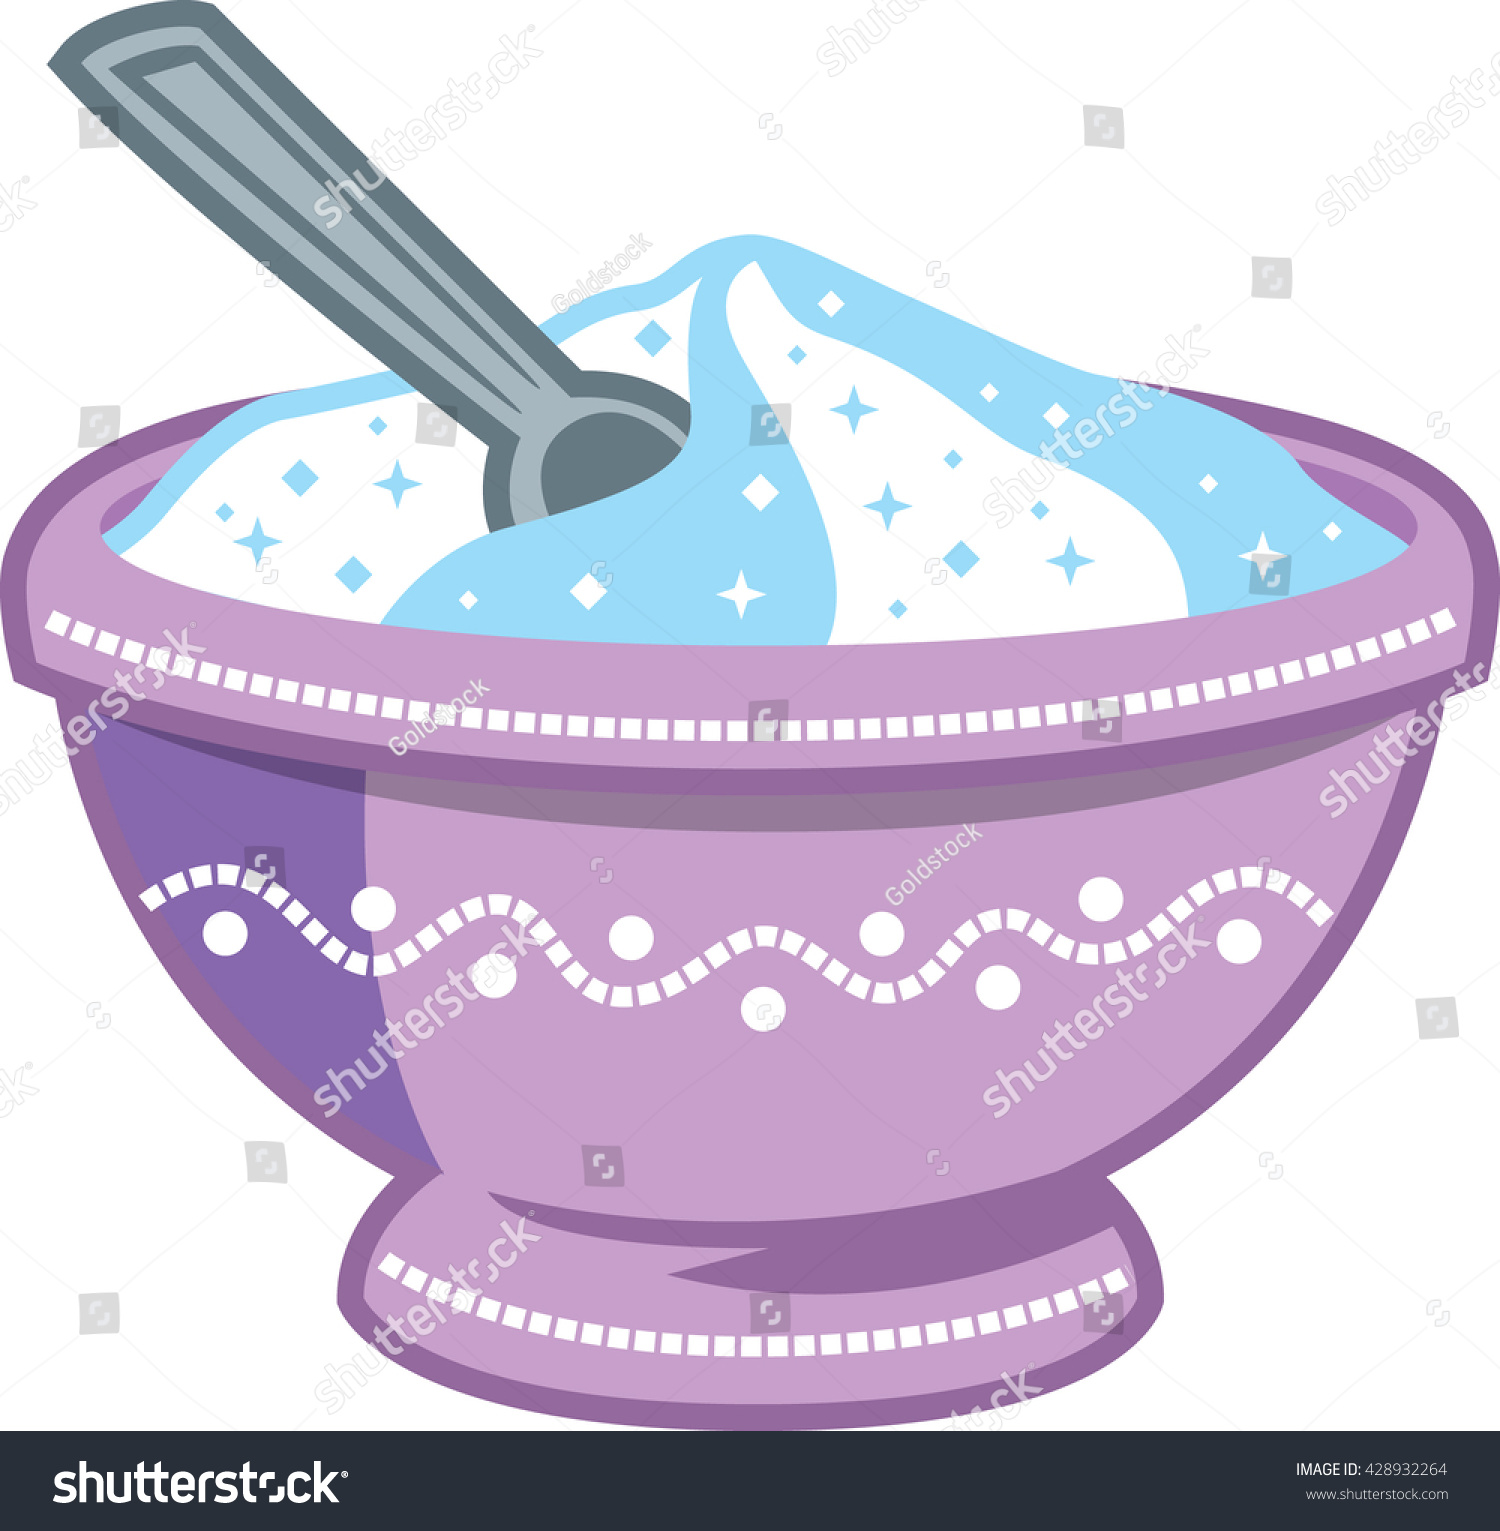 bowl-clipart-sugar-bowl-14.jpg